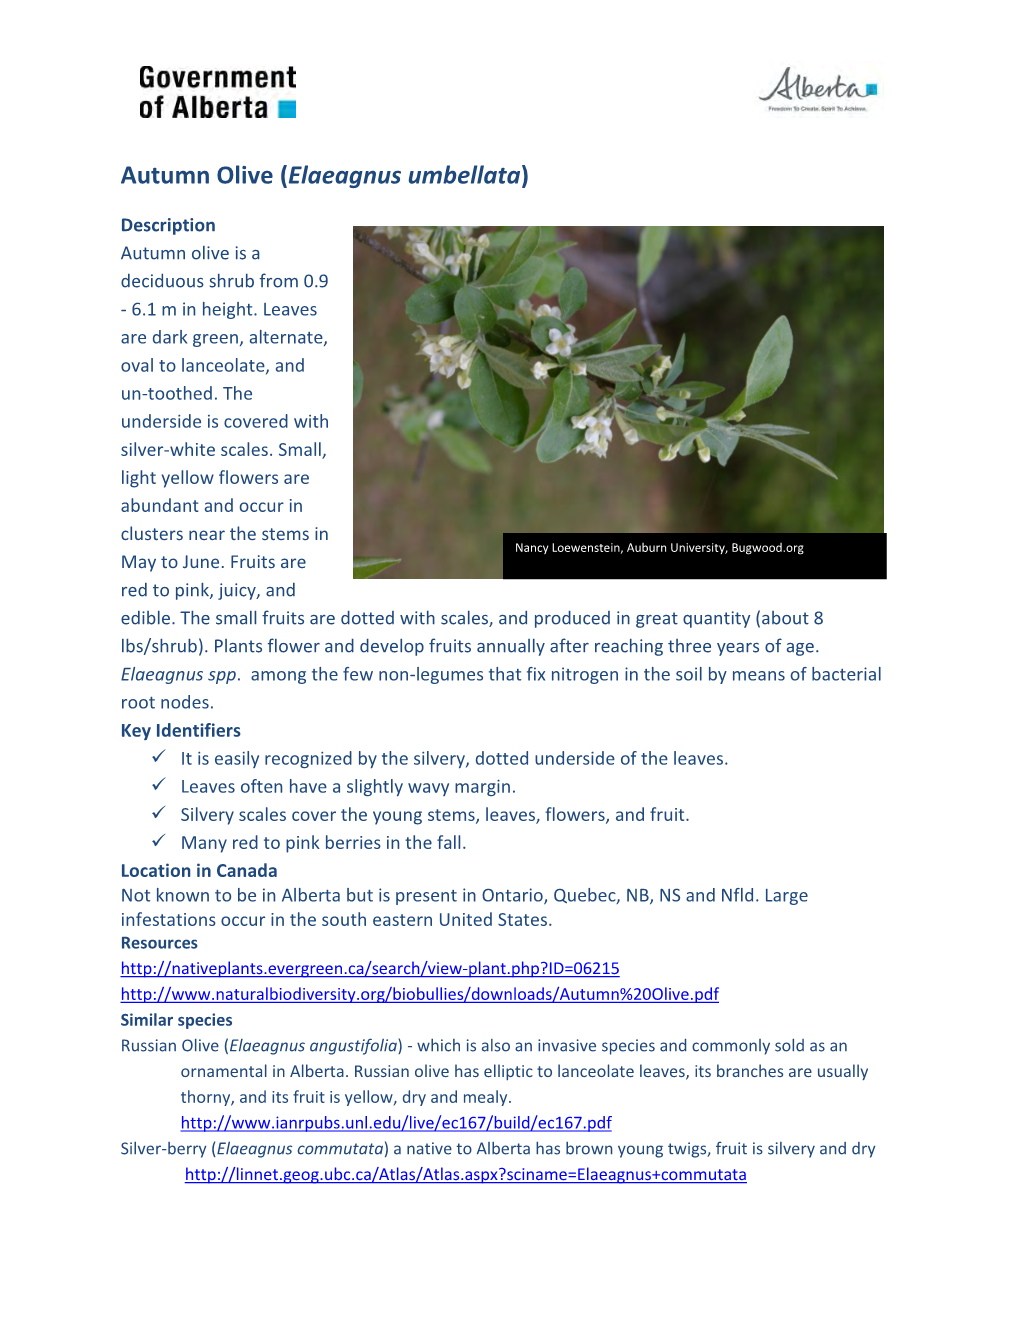 Autumn Olive (Elaeagnus Umbellata)